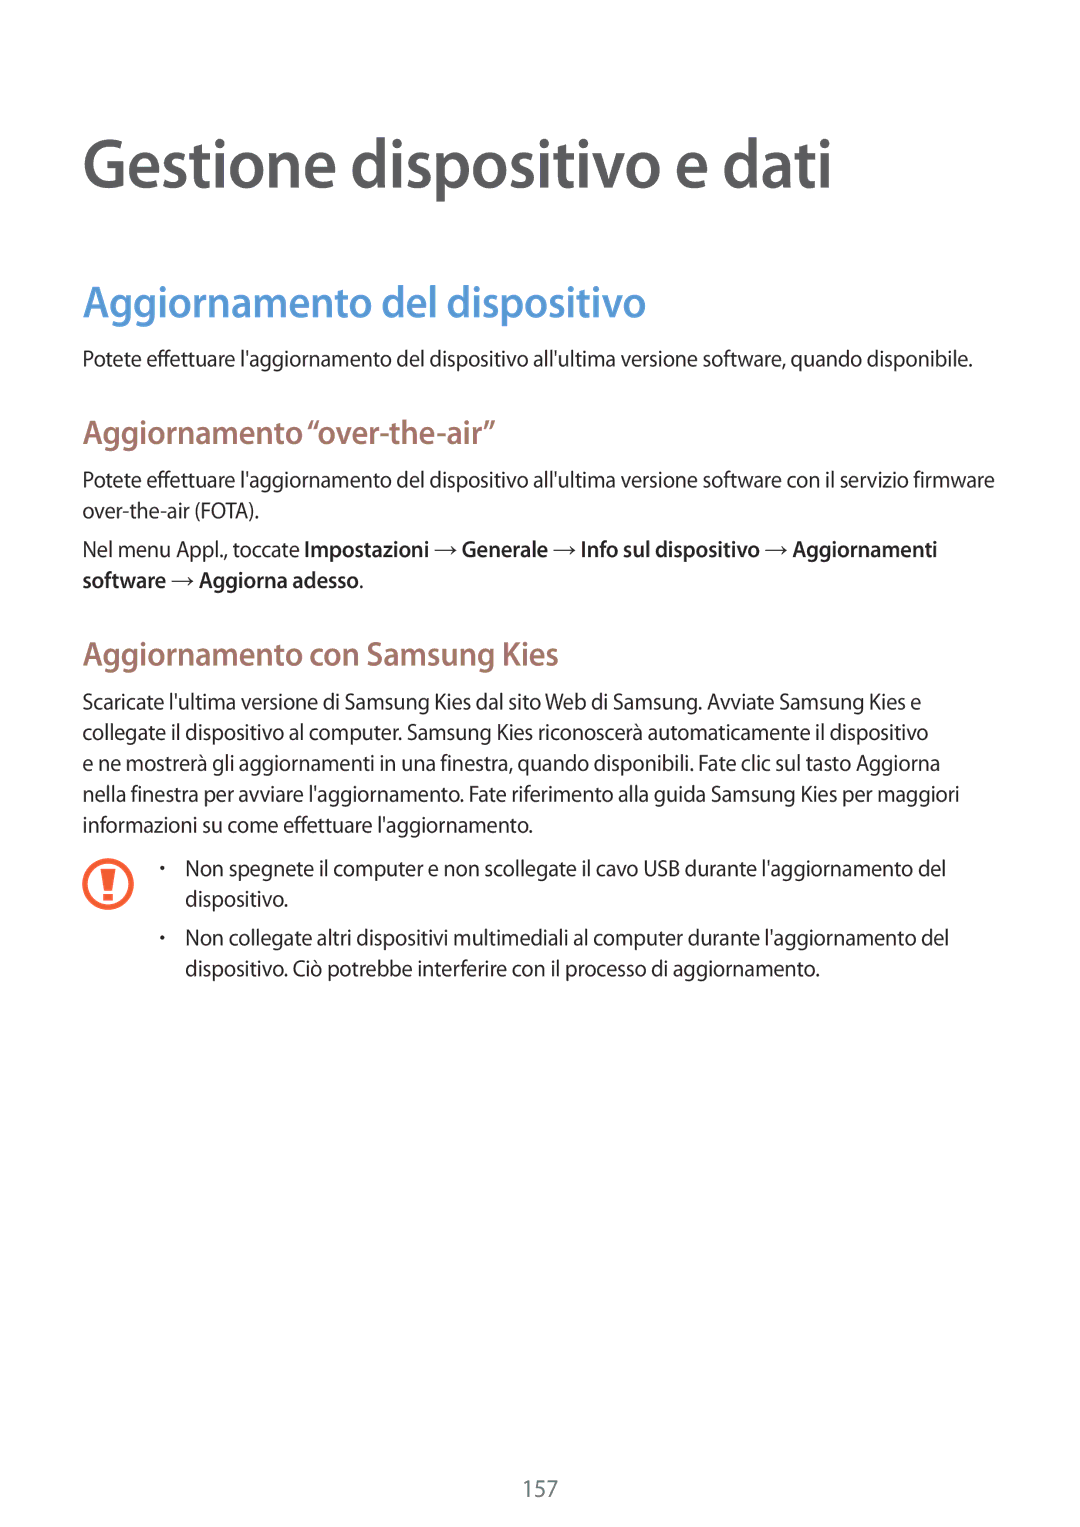 Samsung SM-T805NTSAITV manual Gestione dispositivo e dati, Aggiornamento del dispositivo, Aggiornamento over-the-air 